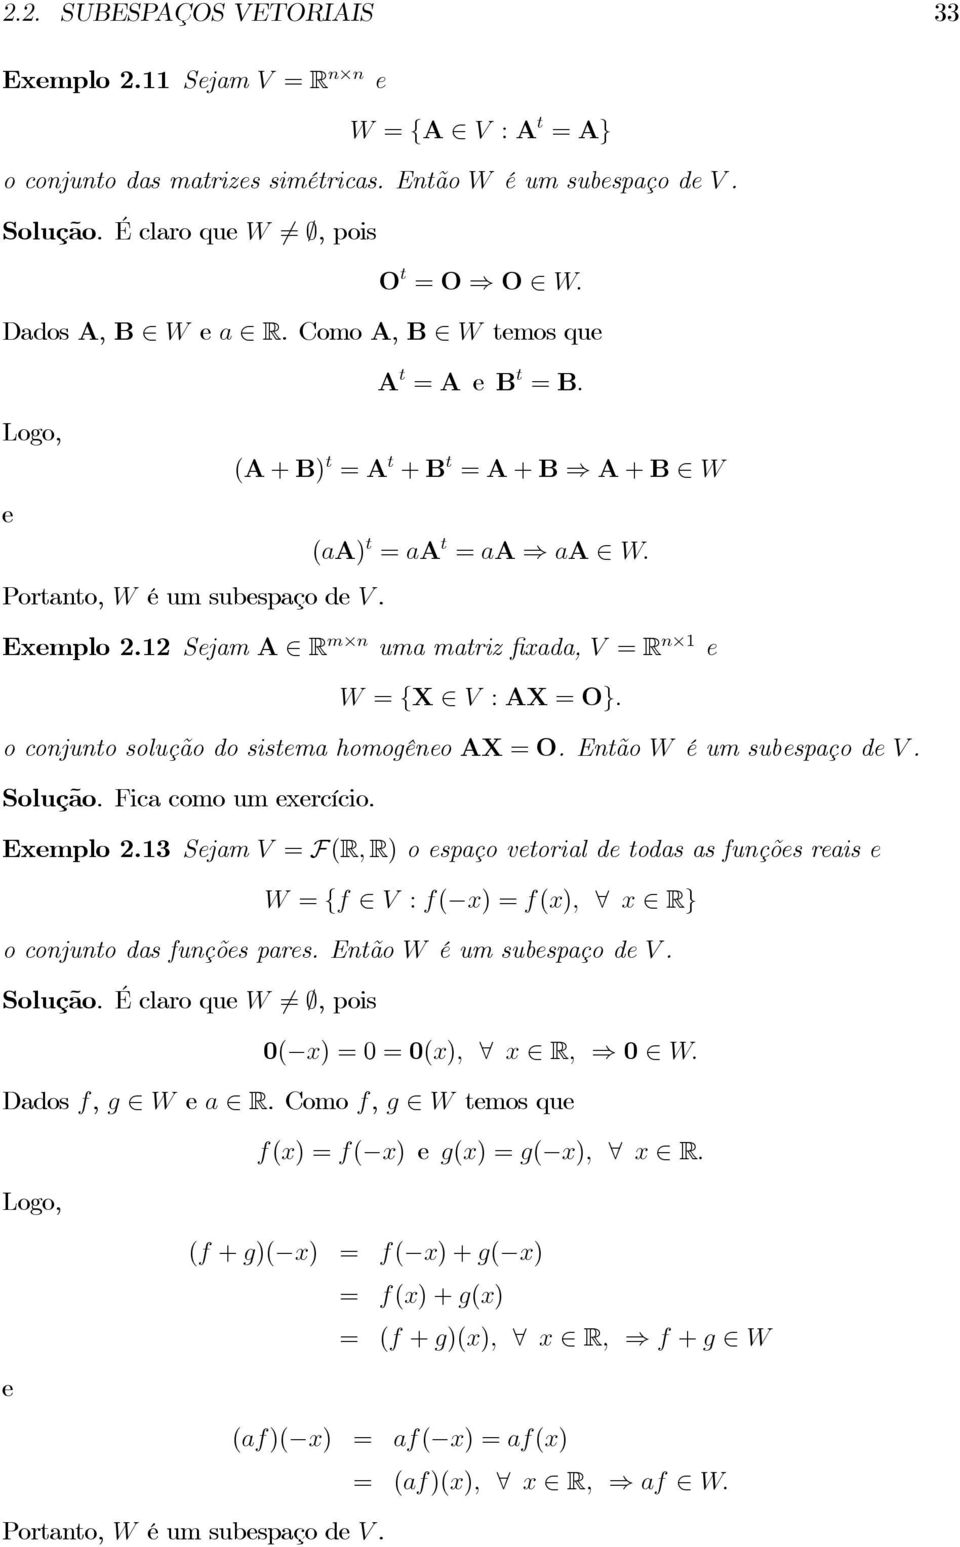 12 Sejam A R m n uma matriz fixada, V = R n 1 e W = {X V : AX = O}. oconjuntosoluçãodosistemahomogêneoax = O. EntãoW éumsubespaçodev. Solução. Ficacomoumexercício. Exemplo 2.